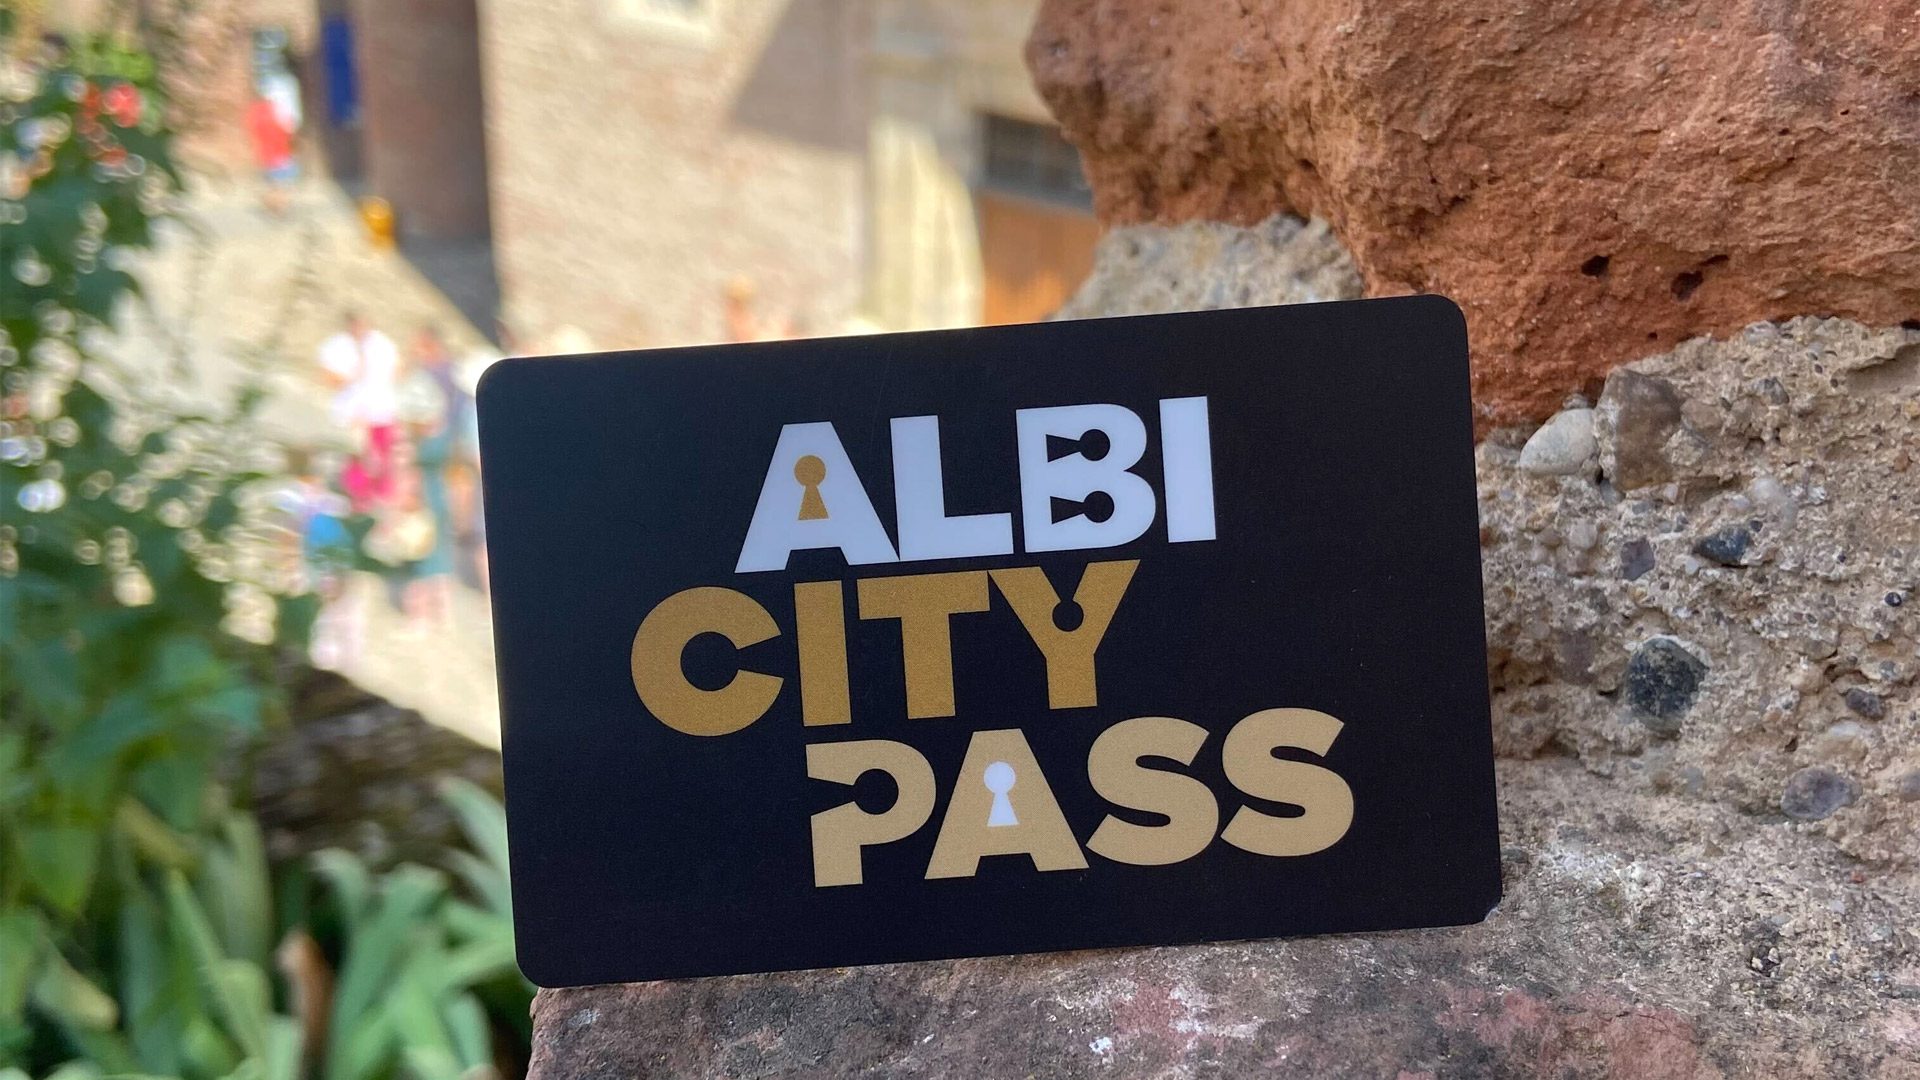 Albi city pass, il pass turistico della destinazione